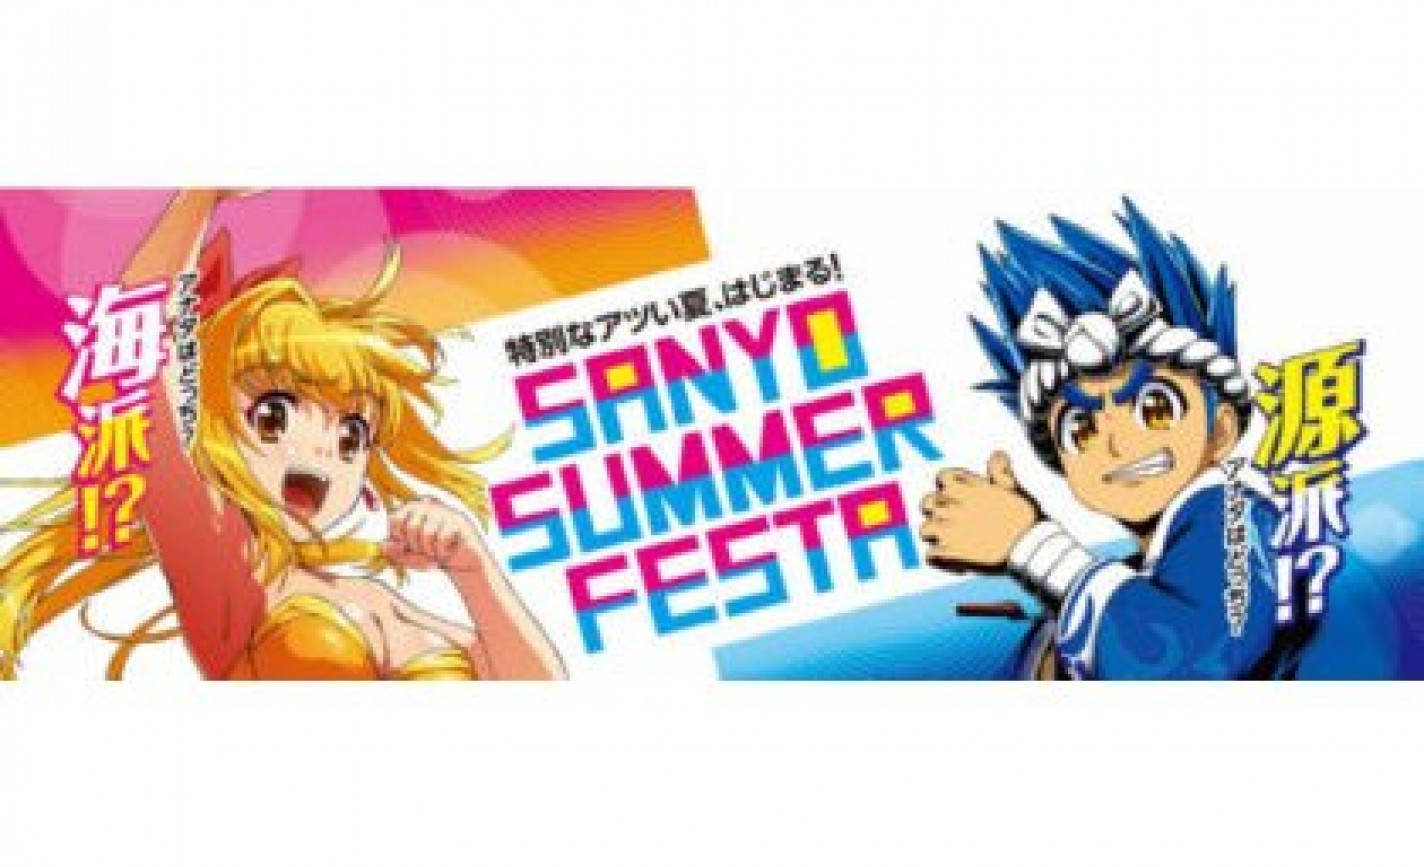 「SANYO SUMMER FESTA」、8月2日から開催 eyecatch-image